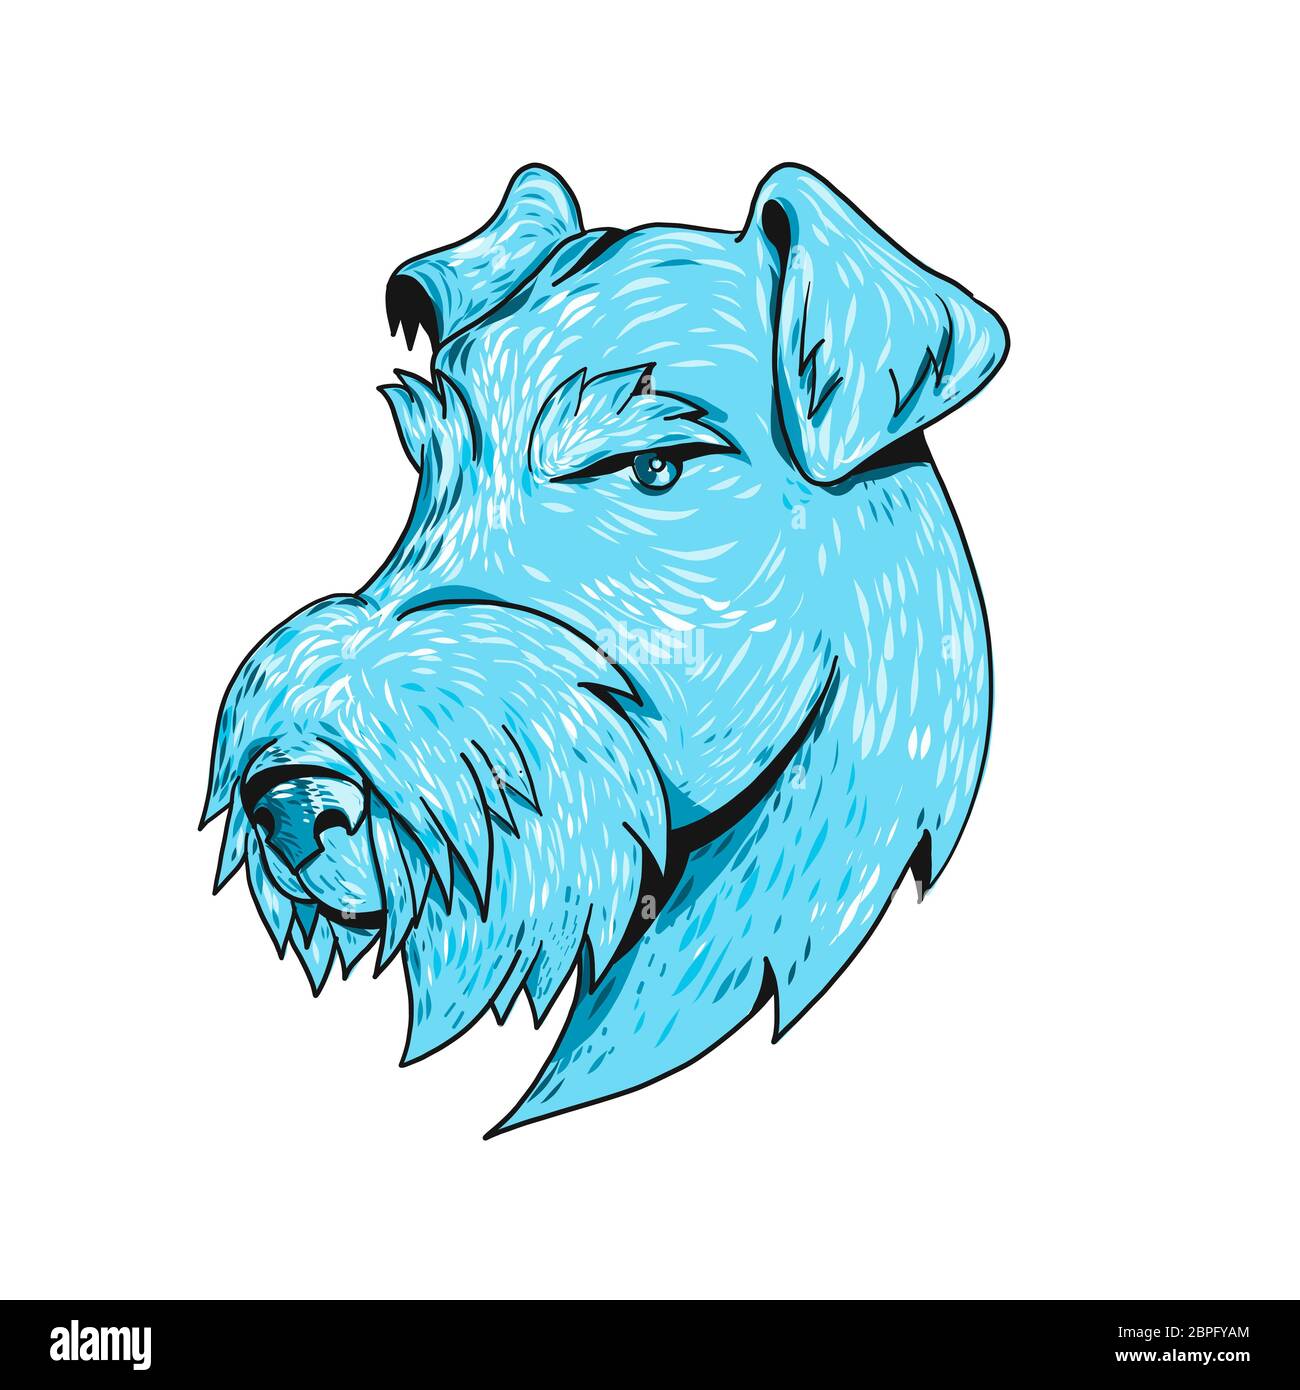 Croquis dessin illustration style général d'un Airedale Terrier, Terrier ou Terrier au bord de Bingley, le plus grand de tous les terriers aussi connu sous le ÒKin Banque D'Images